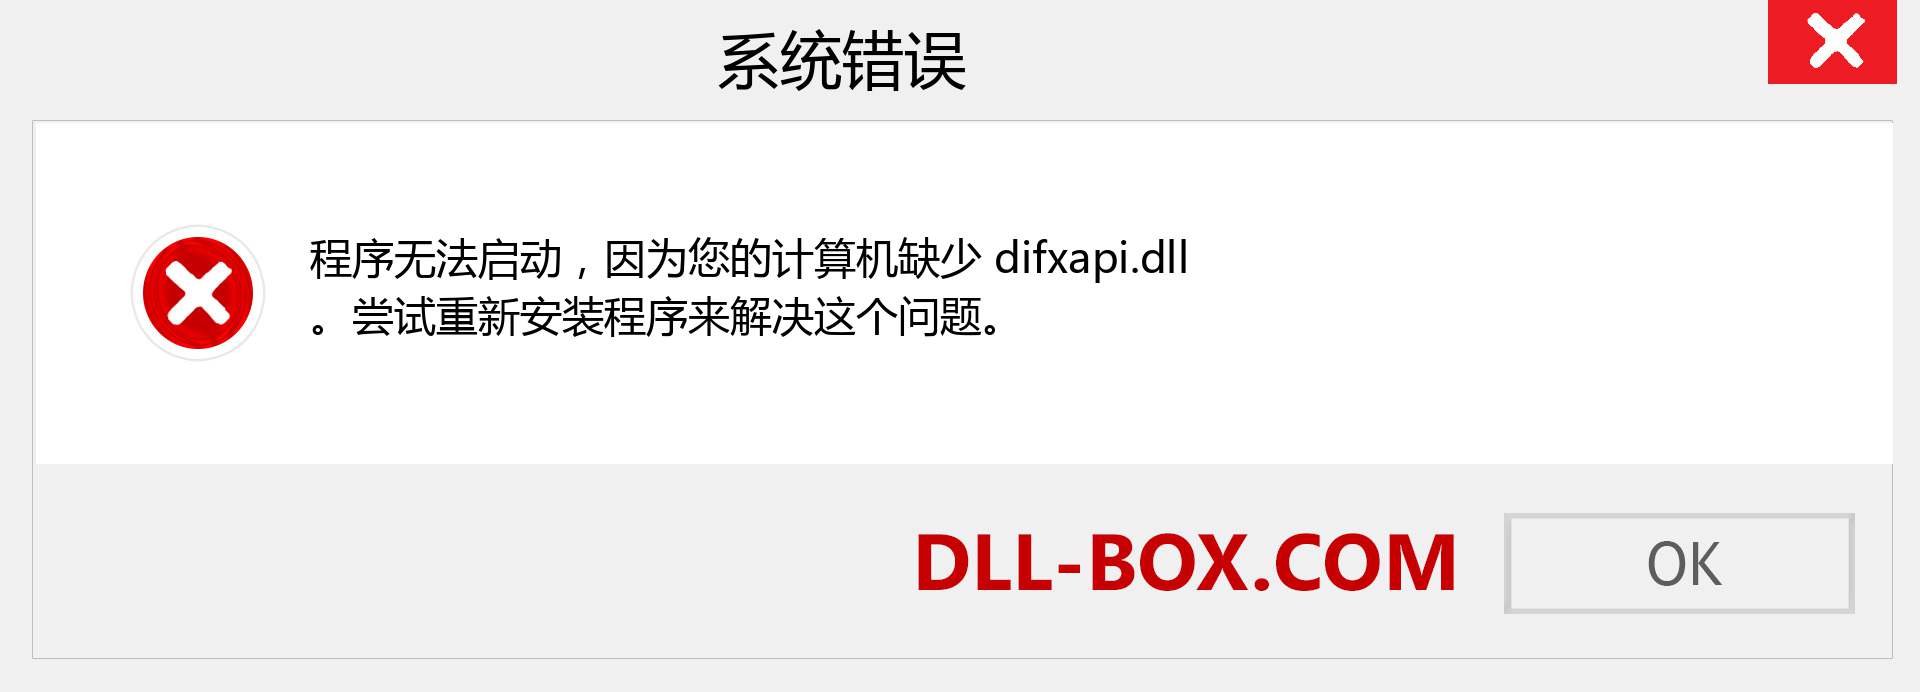 difxapi.dll 文件丢失？。 适用于 Windows 7、8、10 的下载 - 修复 Windows、照片、图像上的 difxapi dll 丢失错误